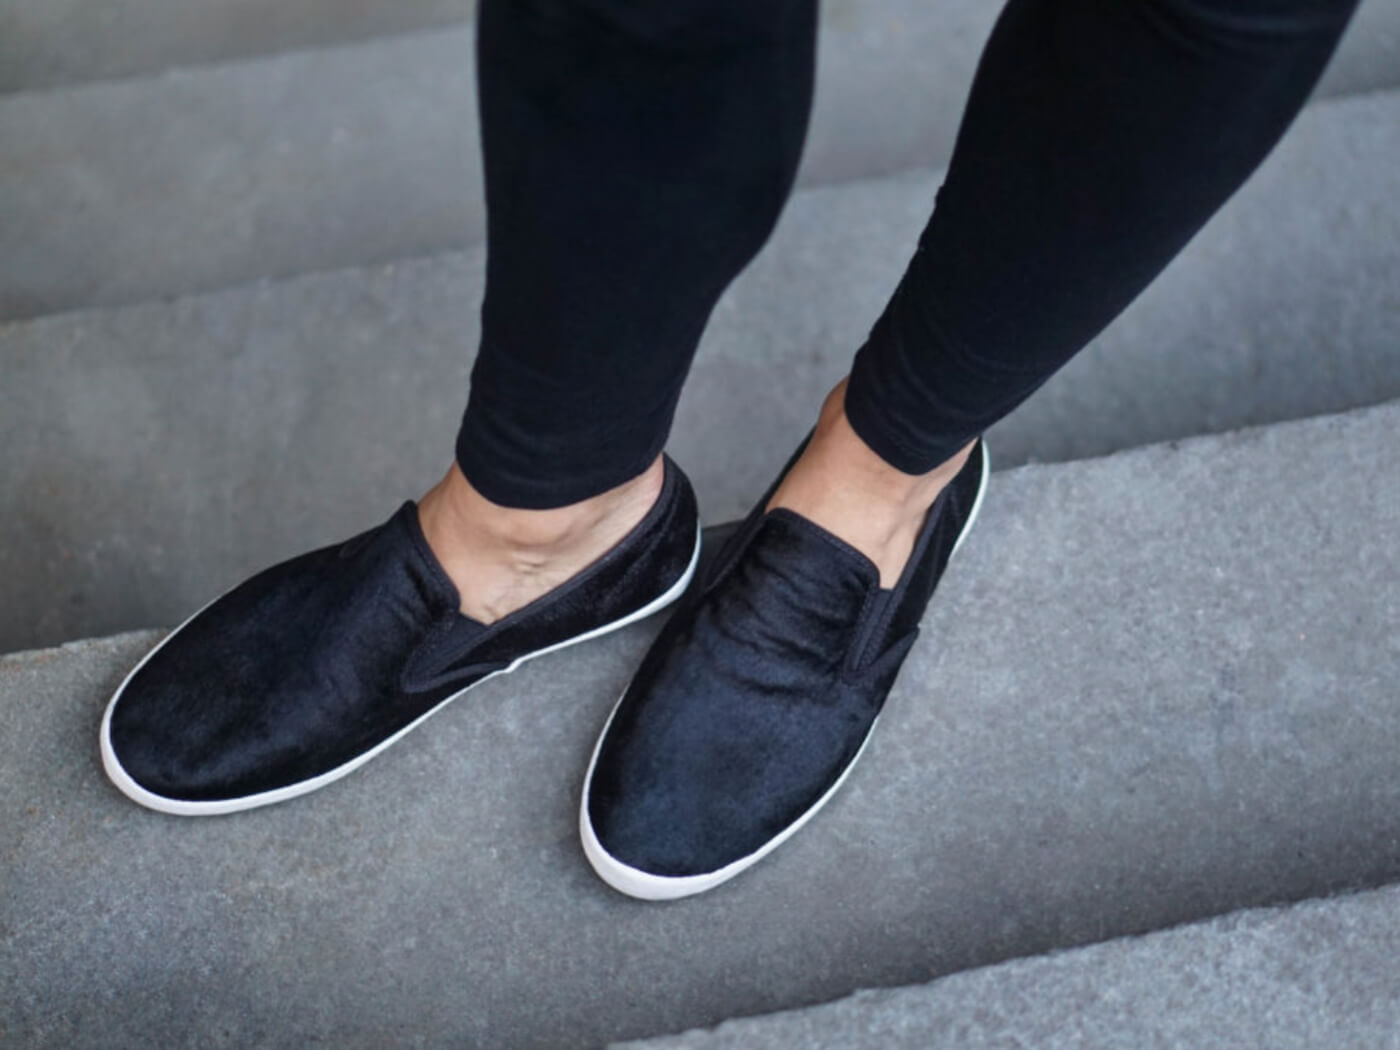 3 Ways To Wear All Black | Stitch Fix Style